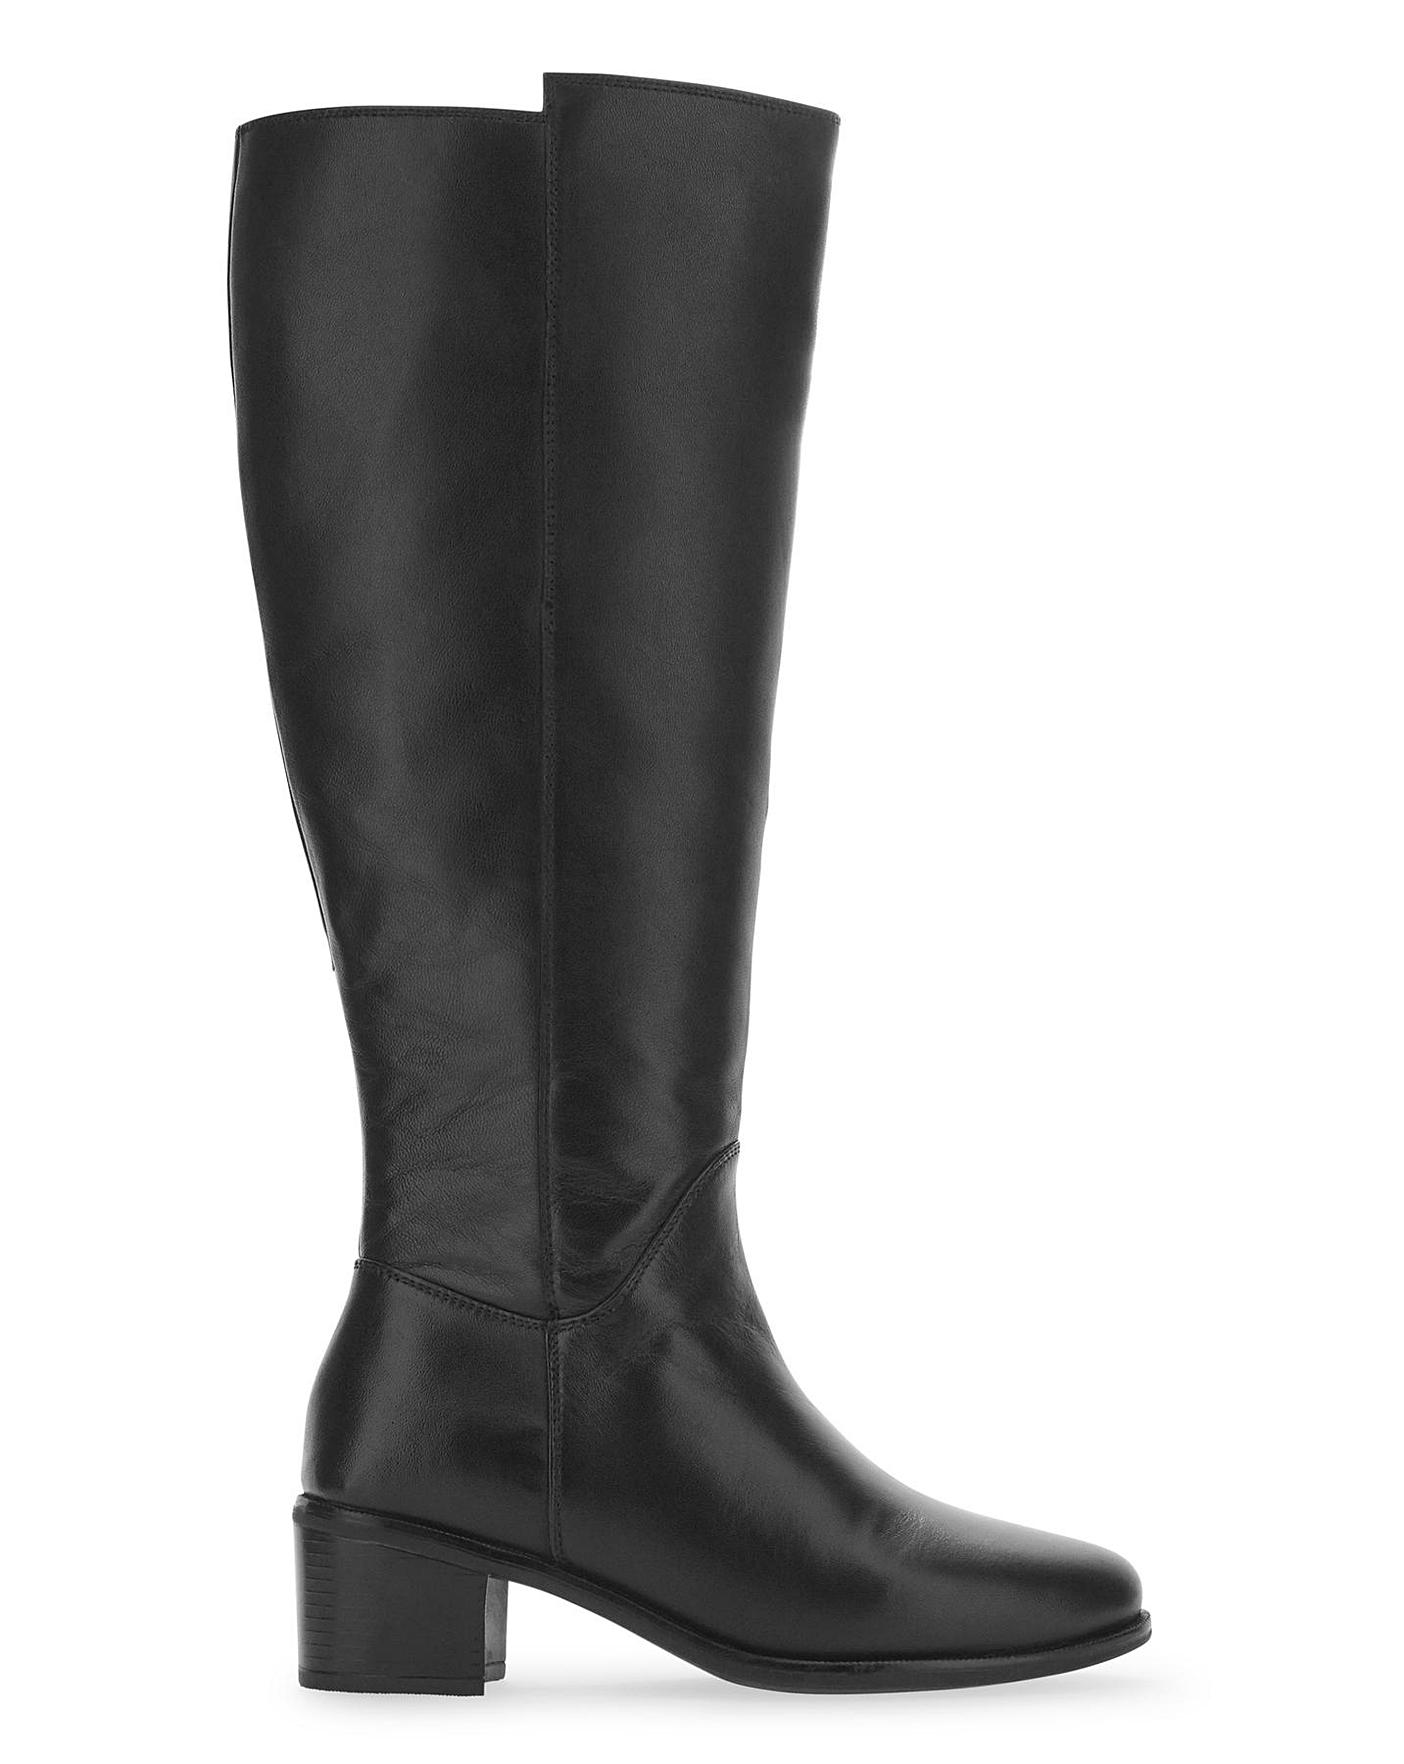 standard calf width boots